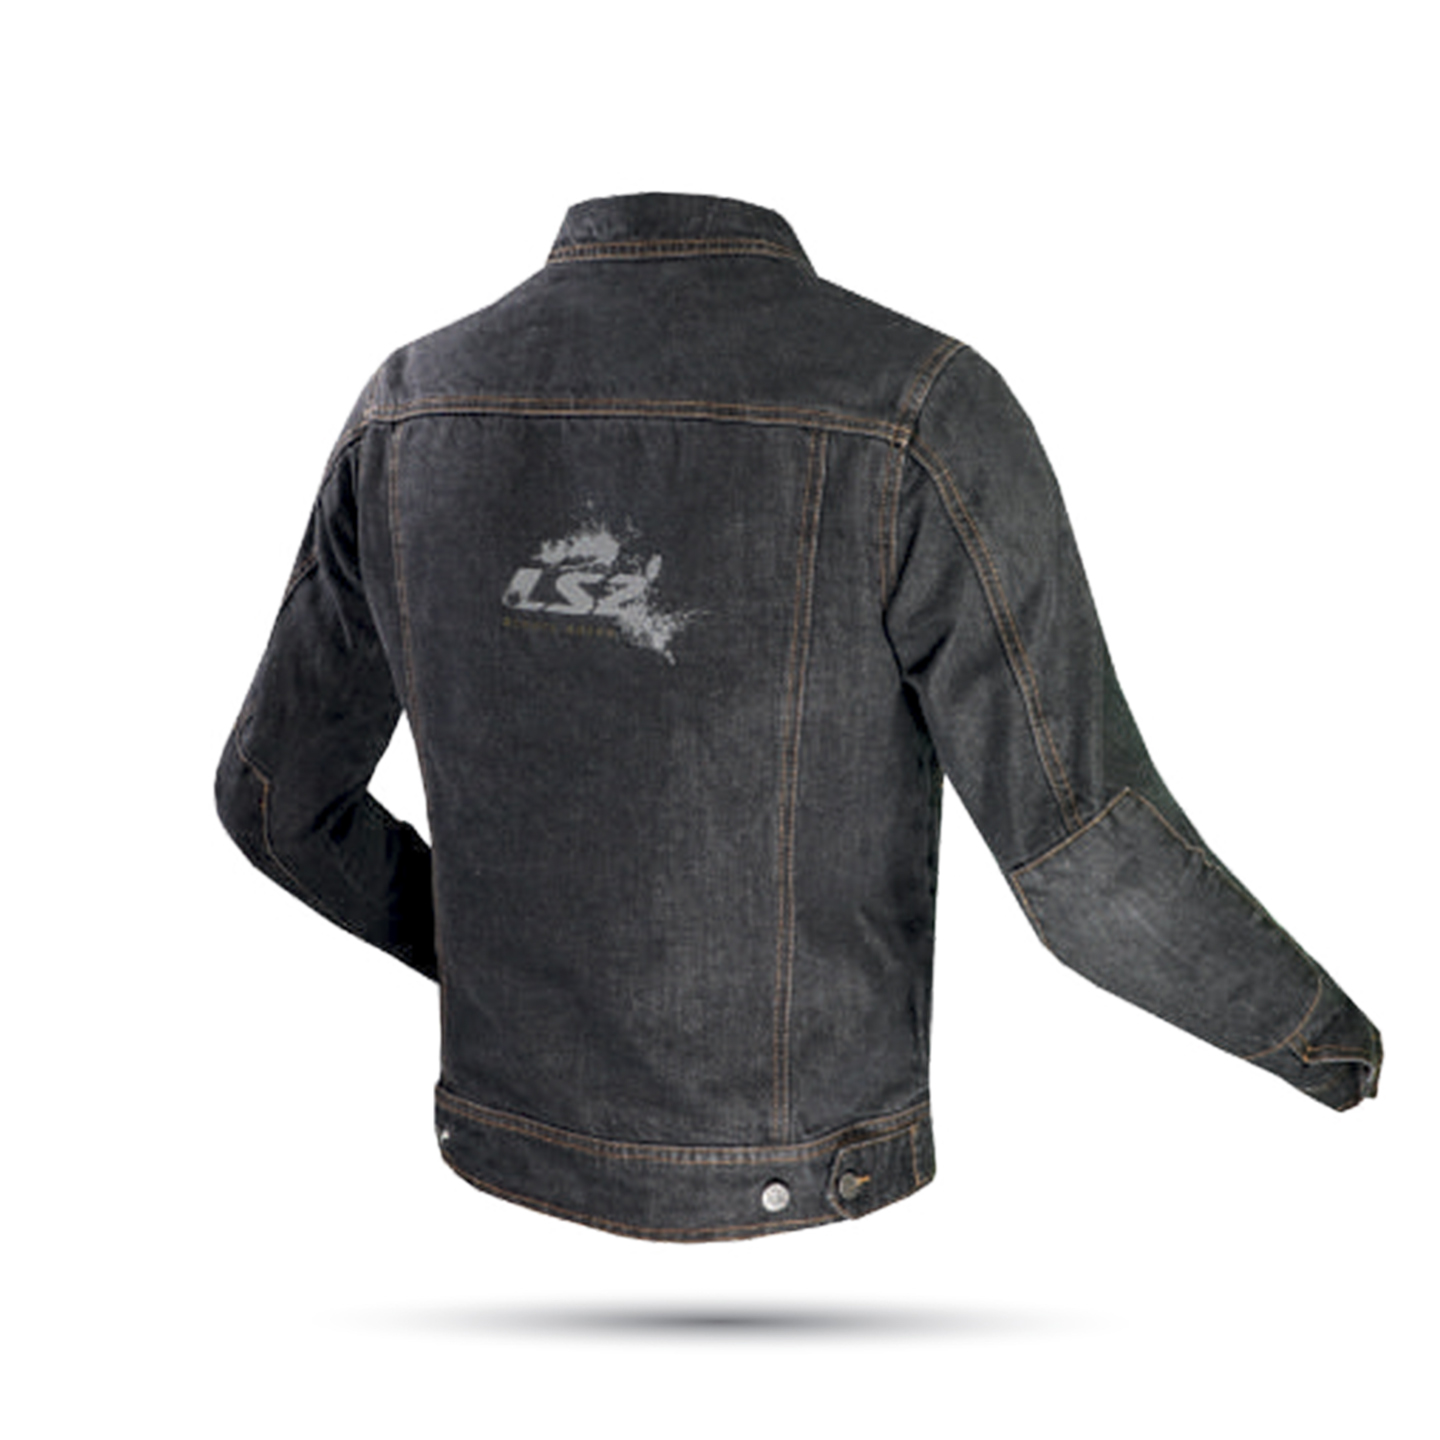 Áo Thời Trang Bảo Hộ Lái Moto, Xe Máy LS2 Oaky Man - GARA20